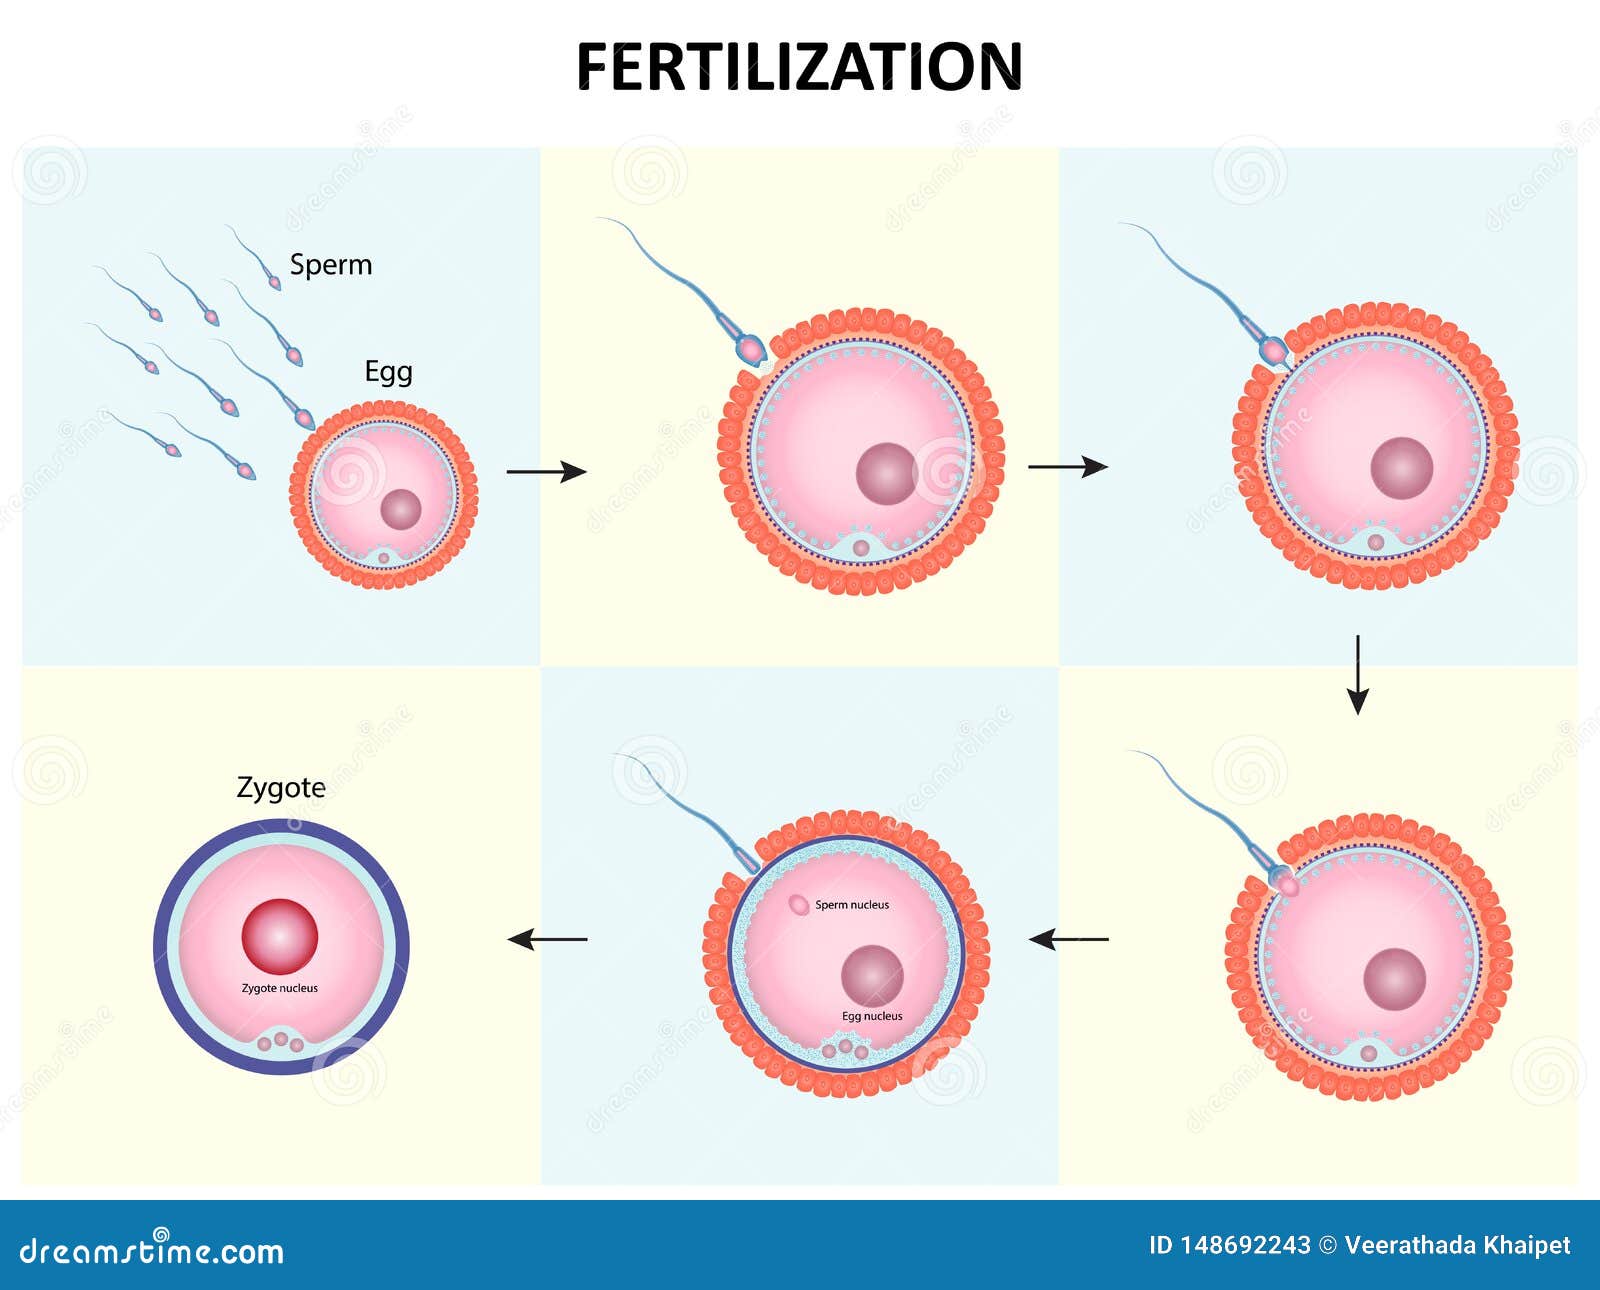 Egg and sperm fertilisation process 434360 Vector Art at 